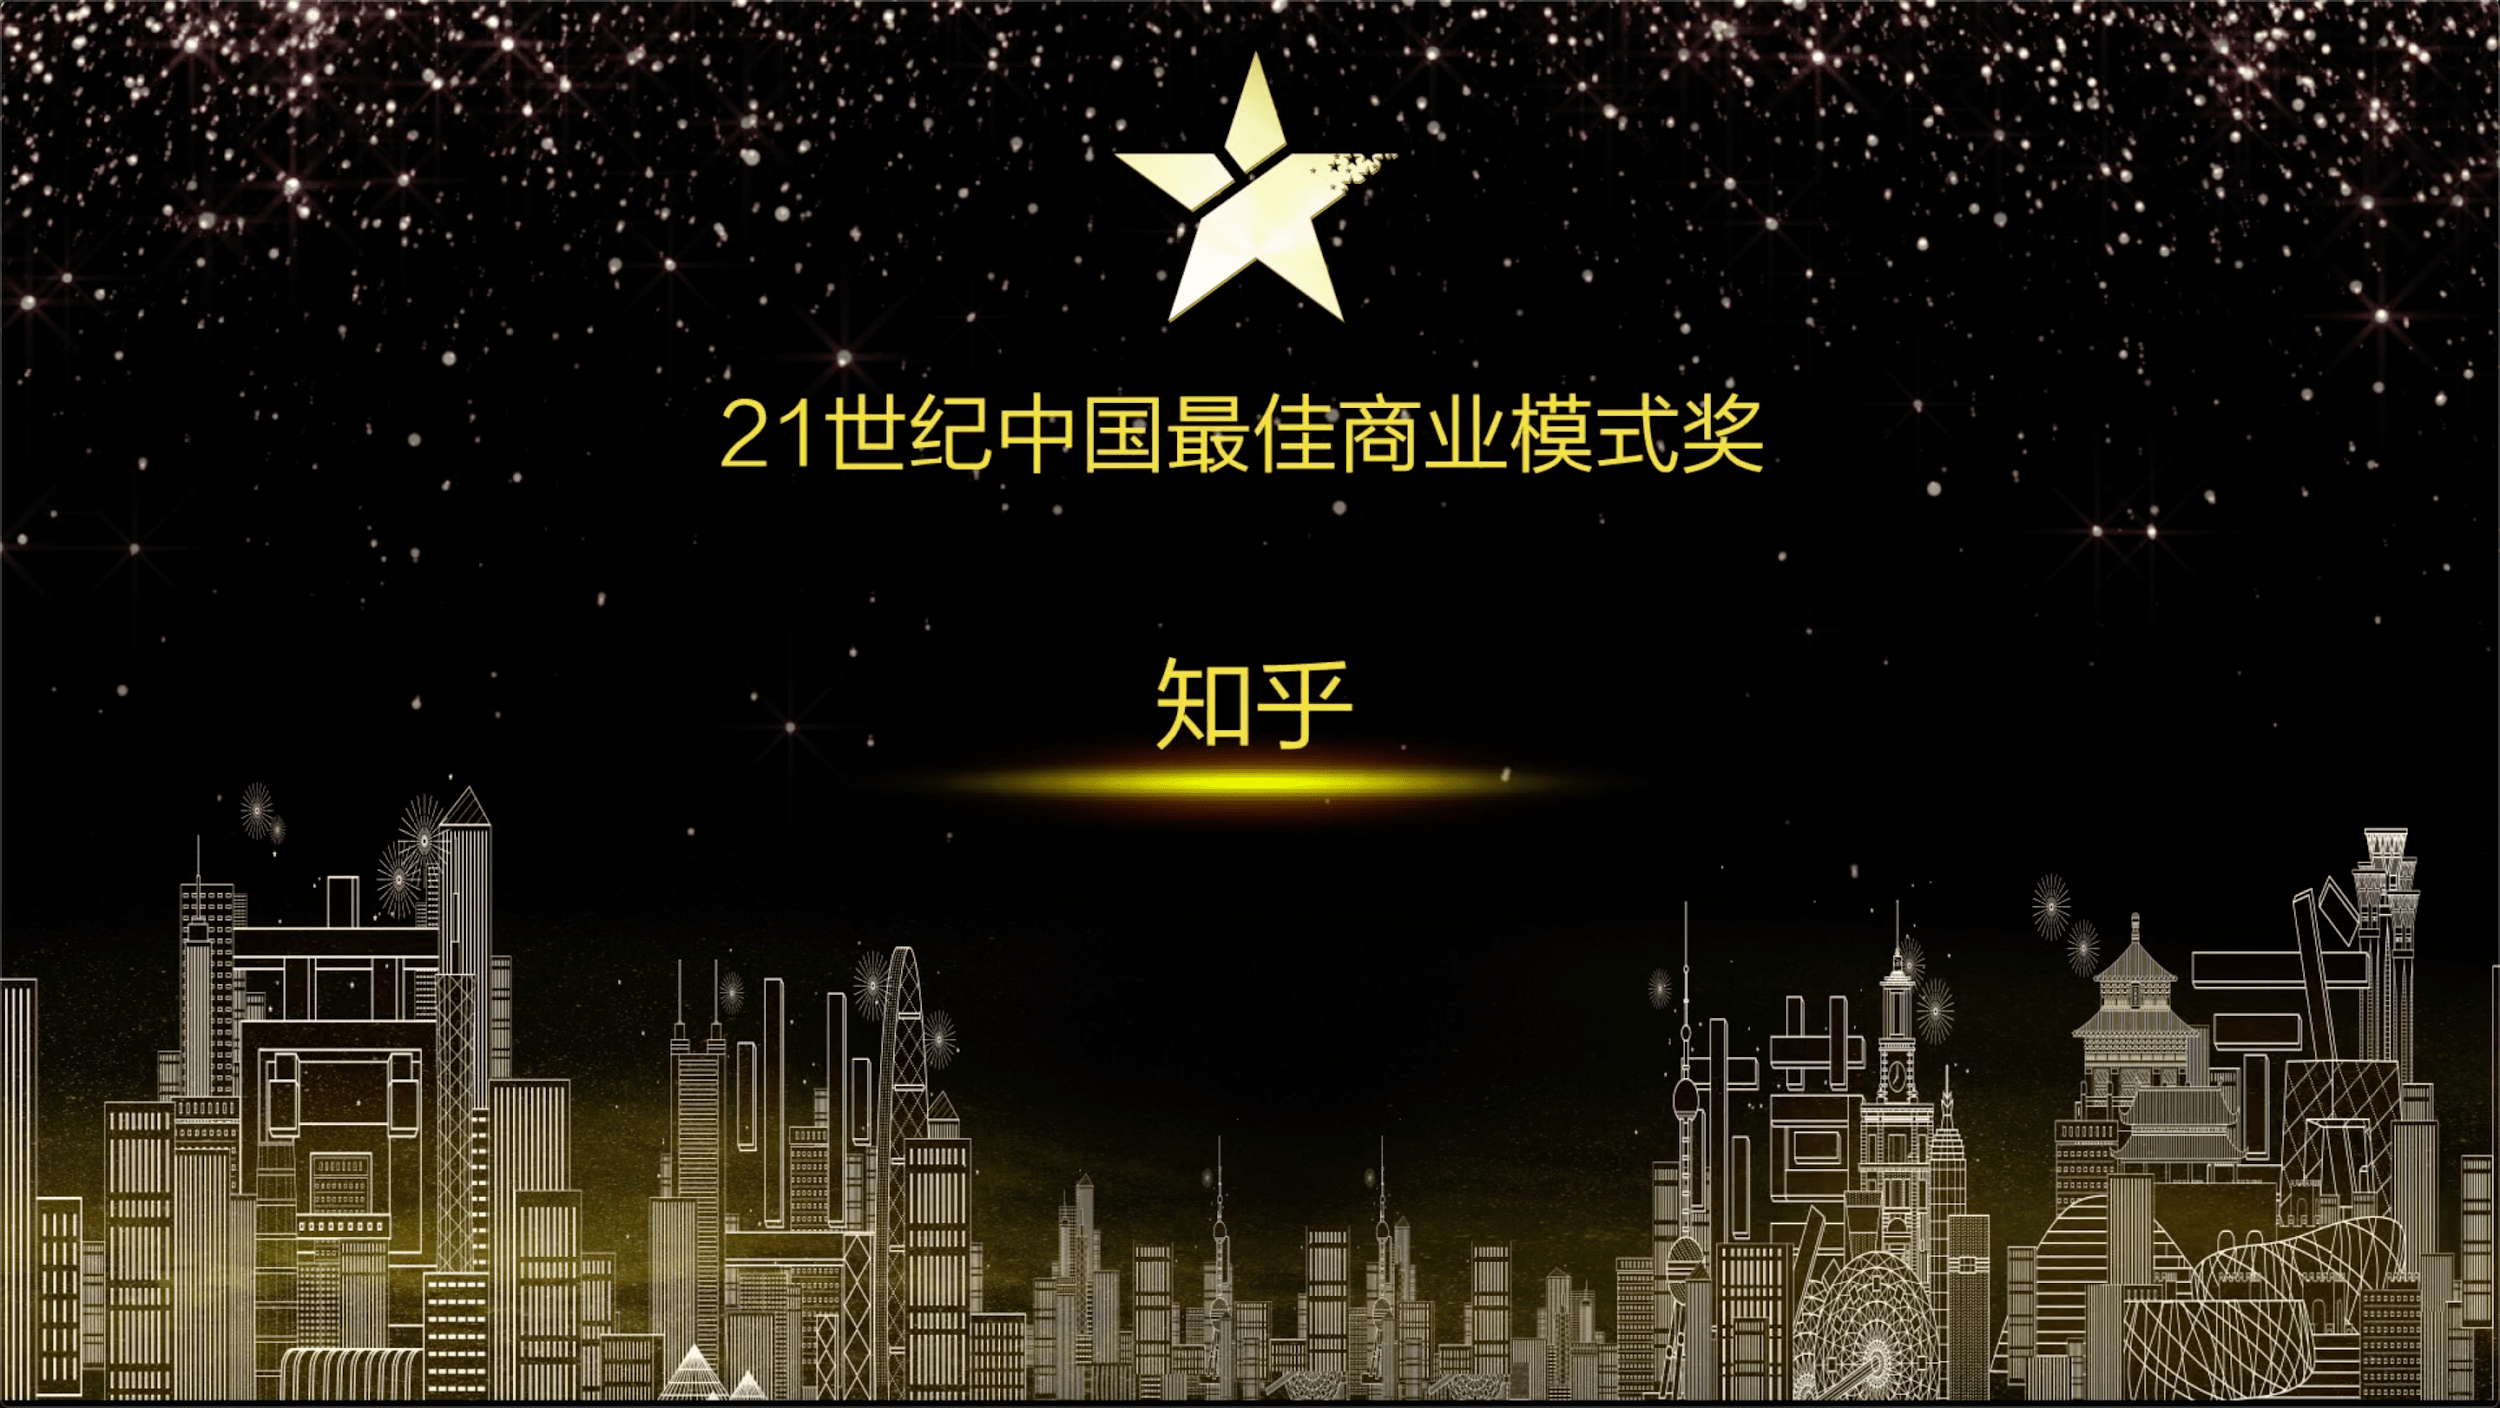 知乎荣获2020年度“21世纪中国最佳商业模式奖”